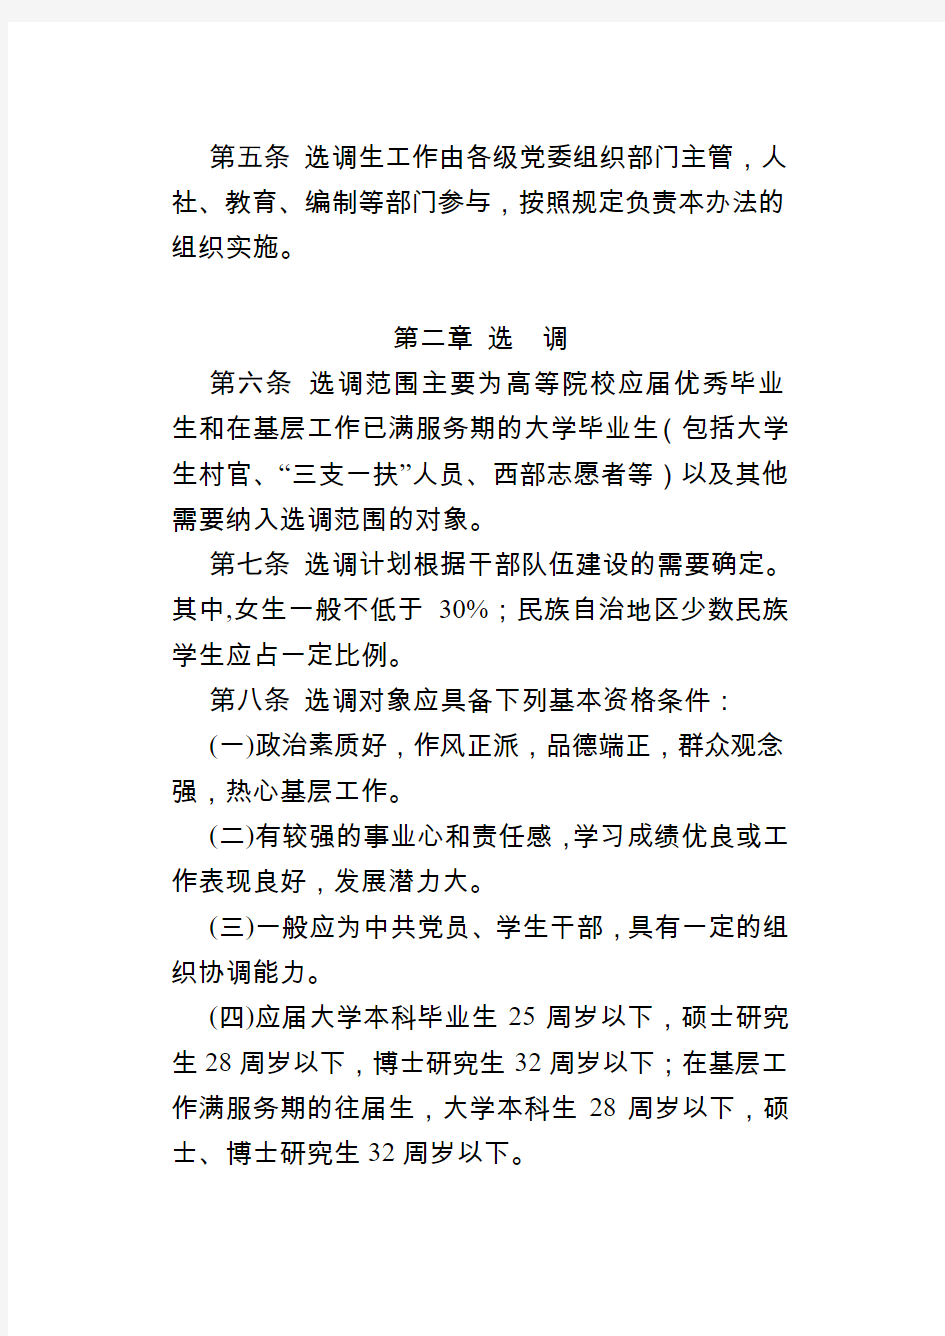 湖北省选调生选拔培养管理办法(2011年)